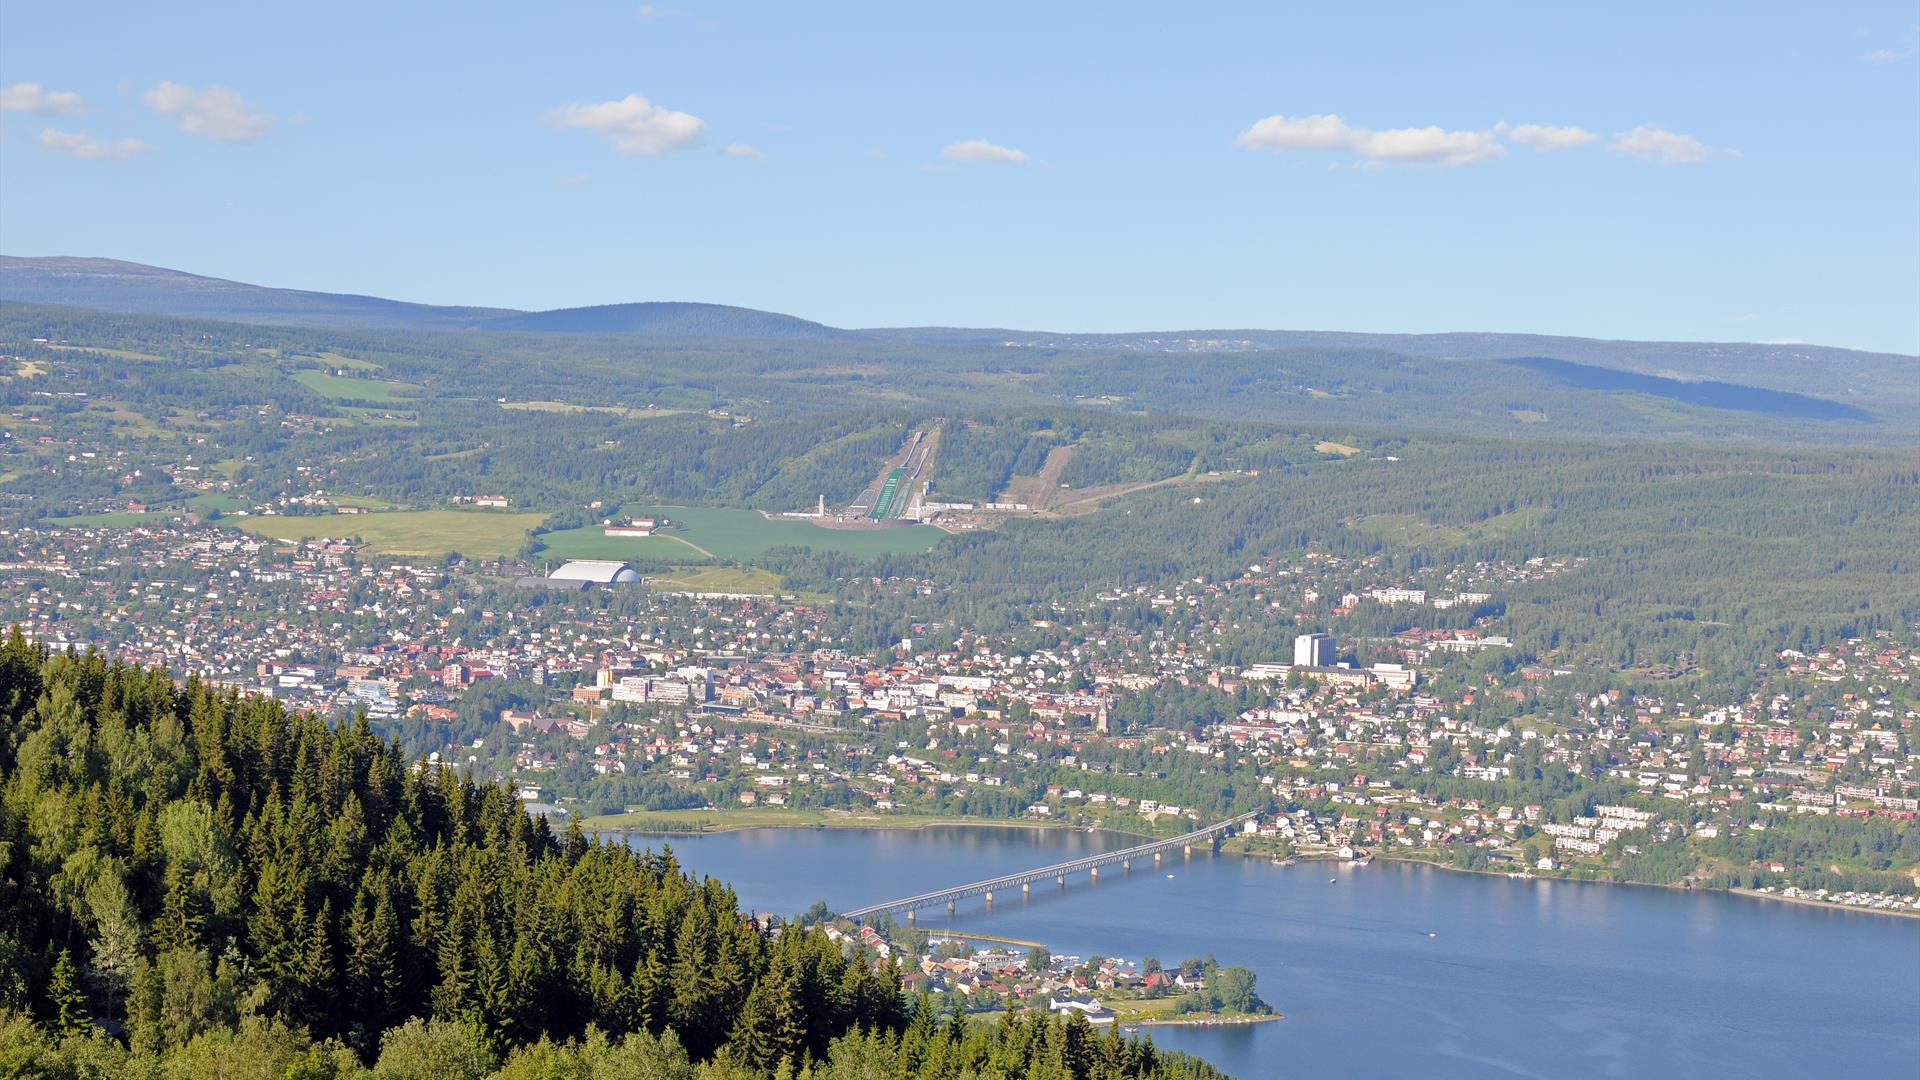 View towards Lillehammer